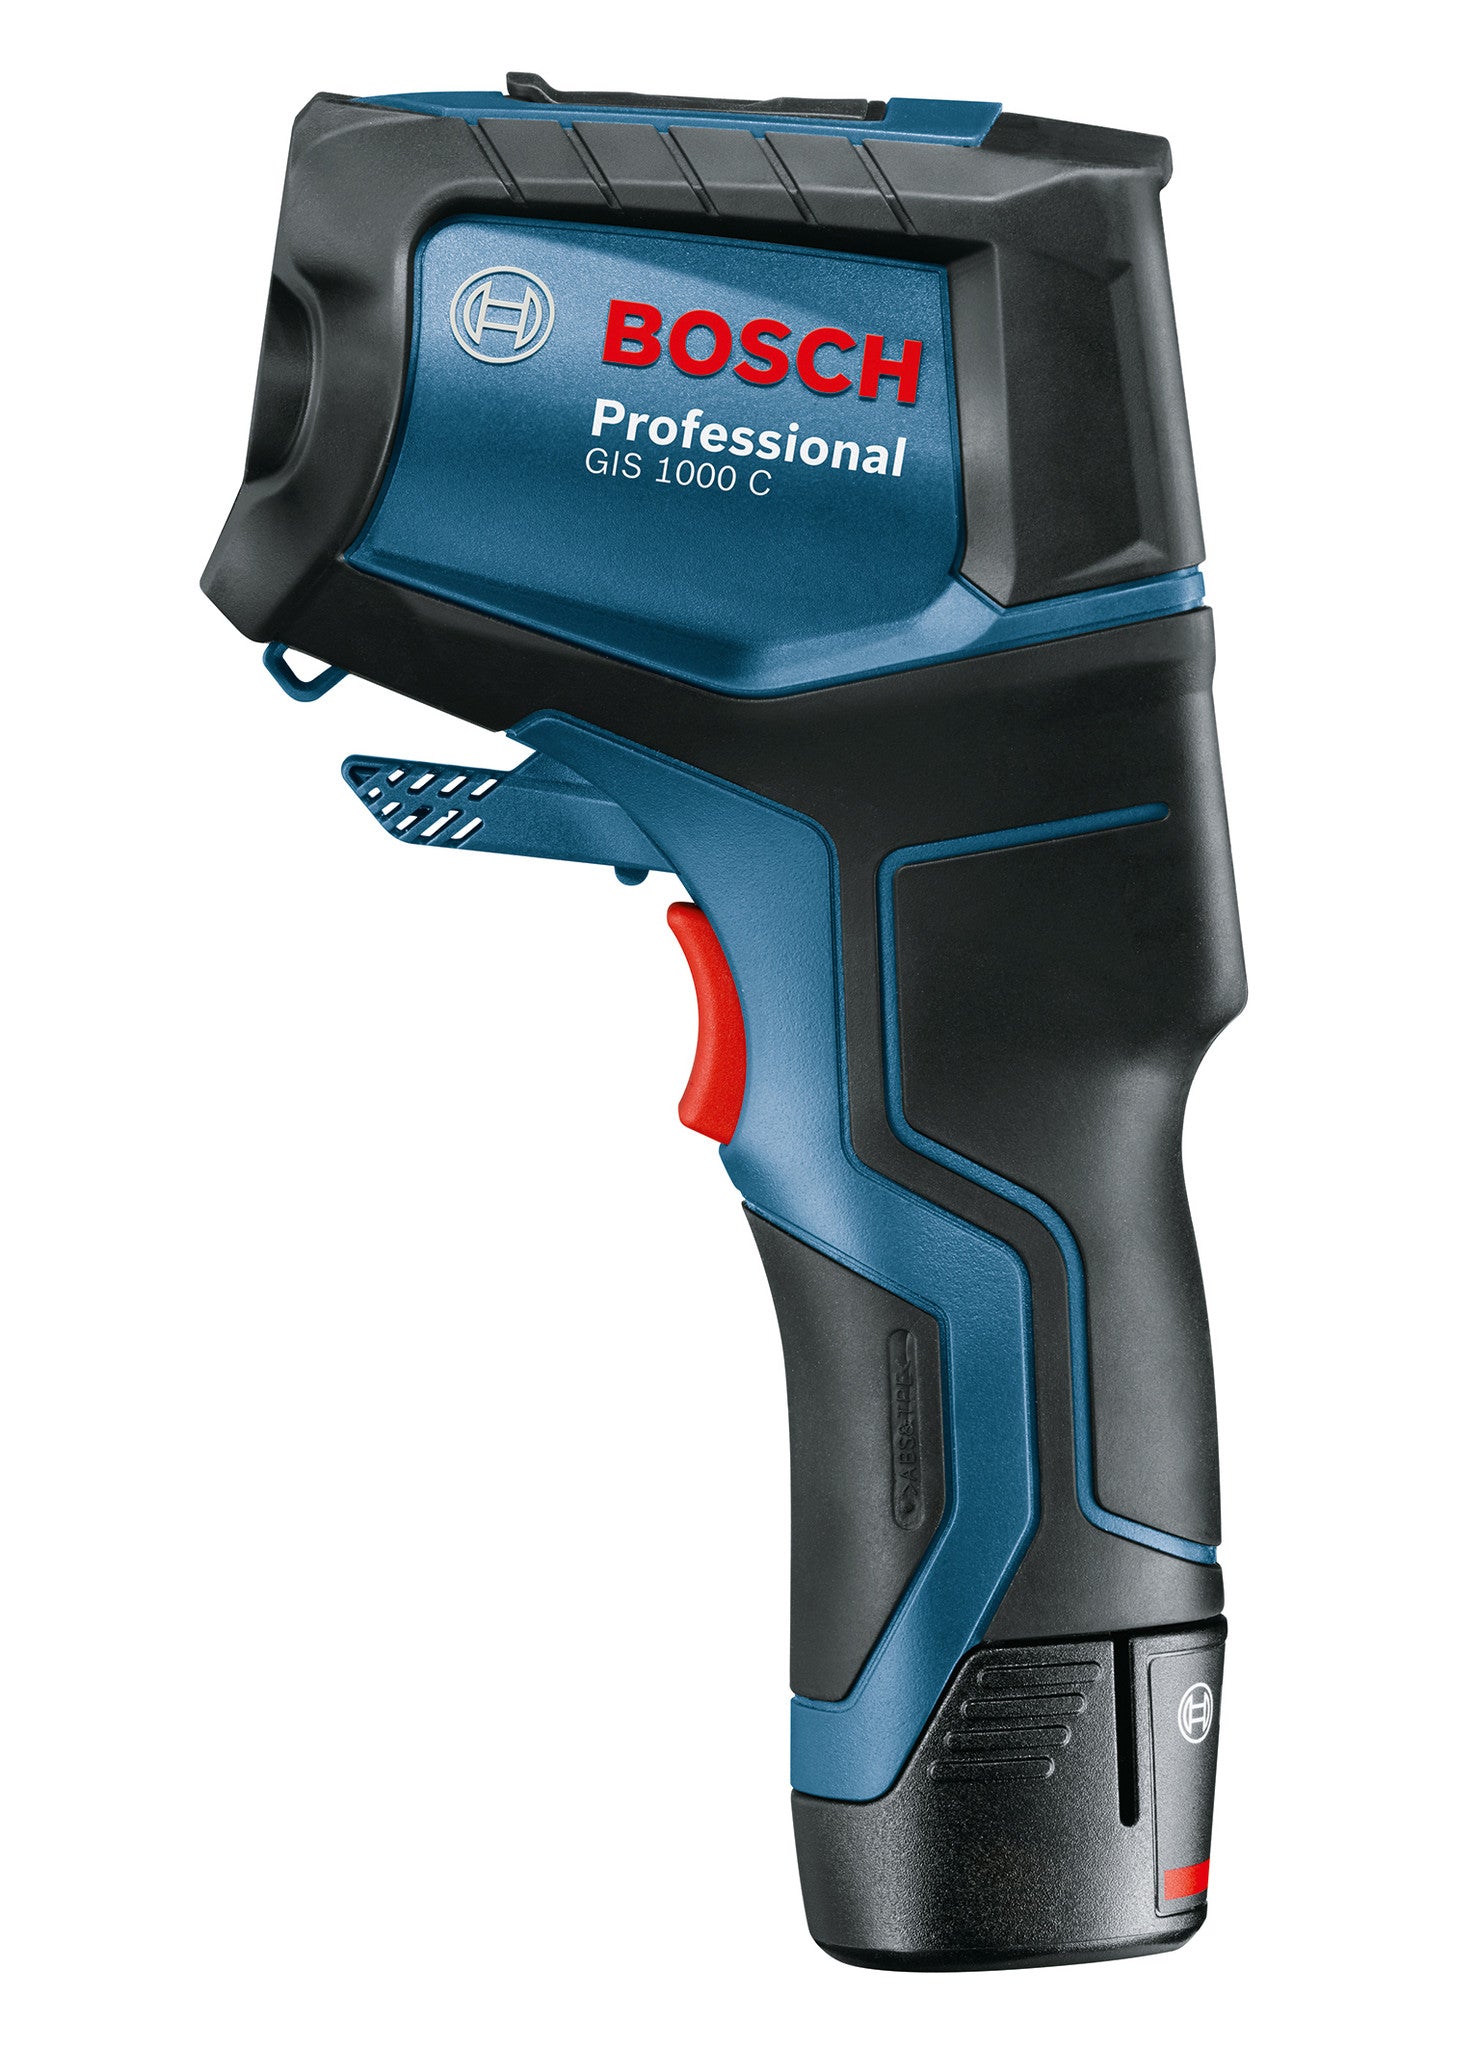 Rilevatore Termico Bosch GIS 1000 C